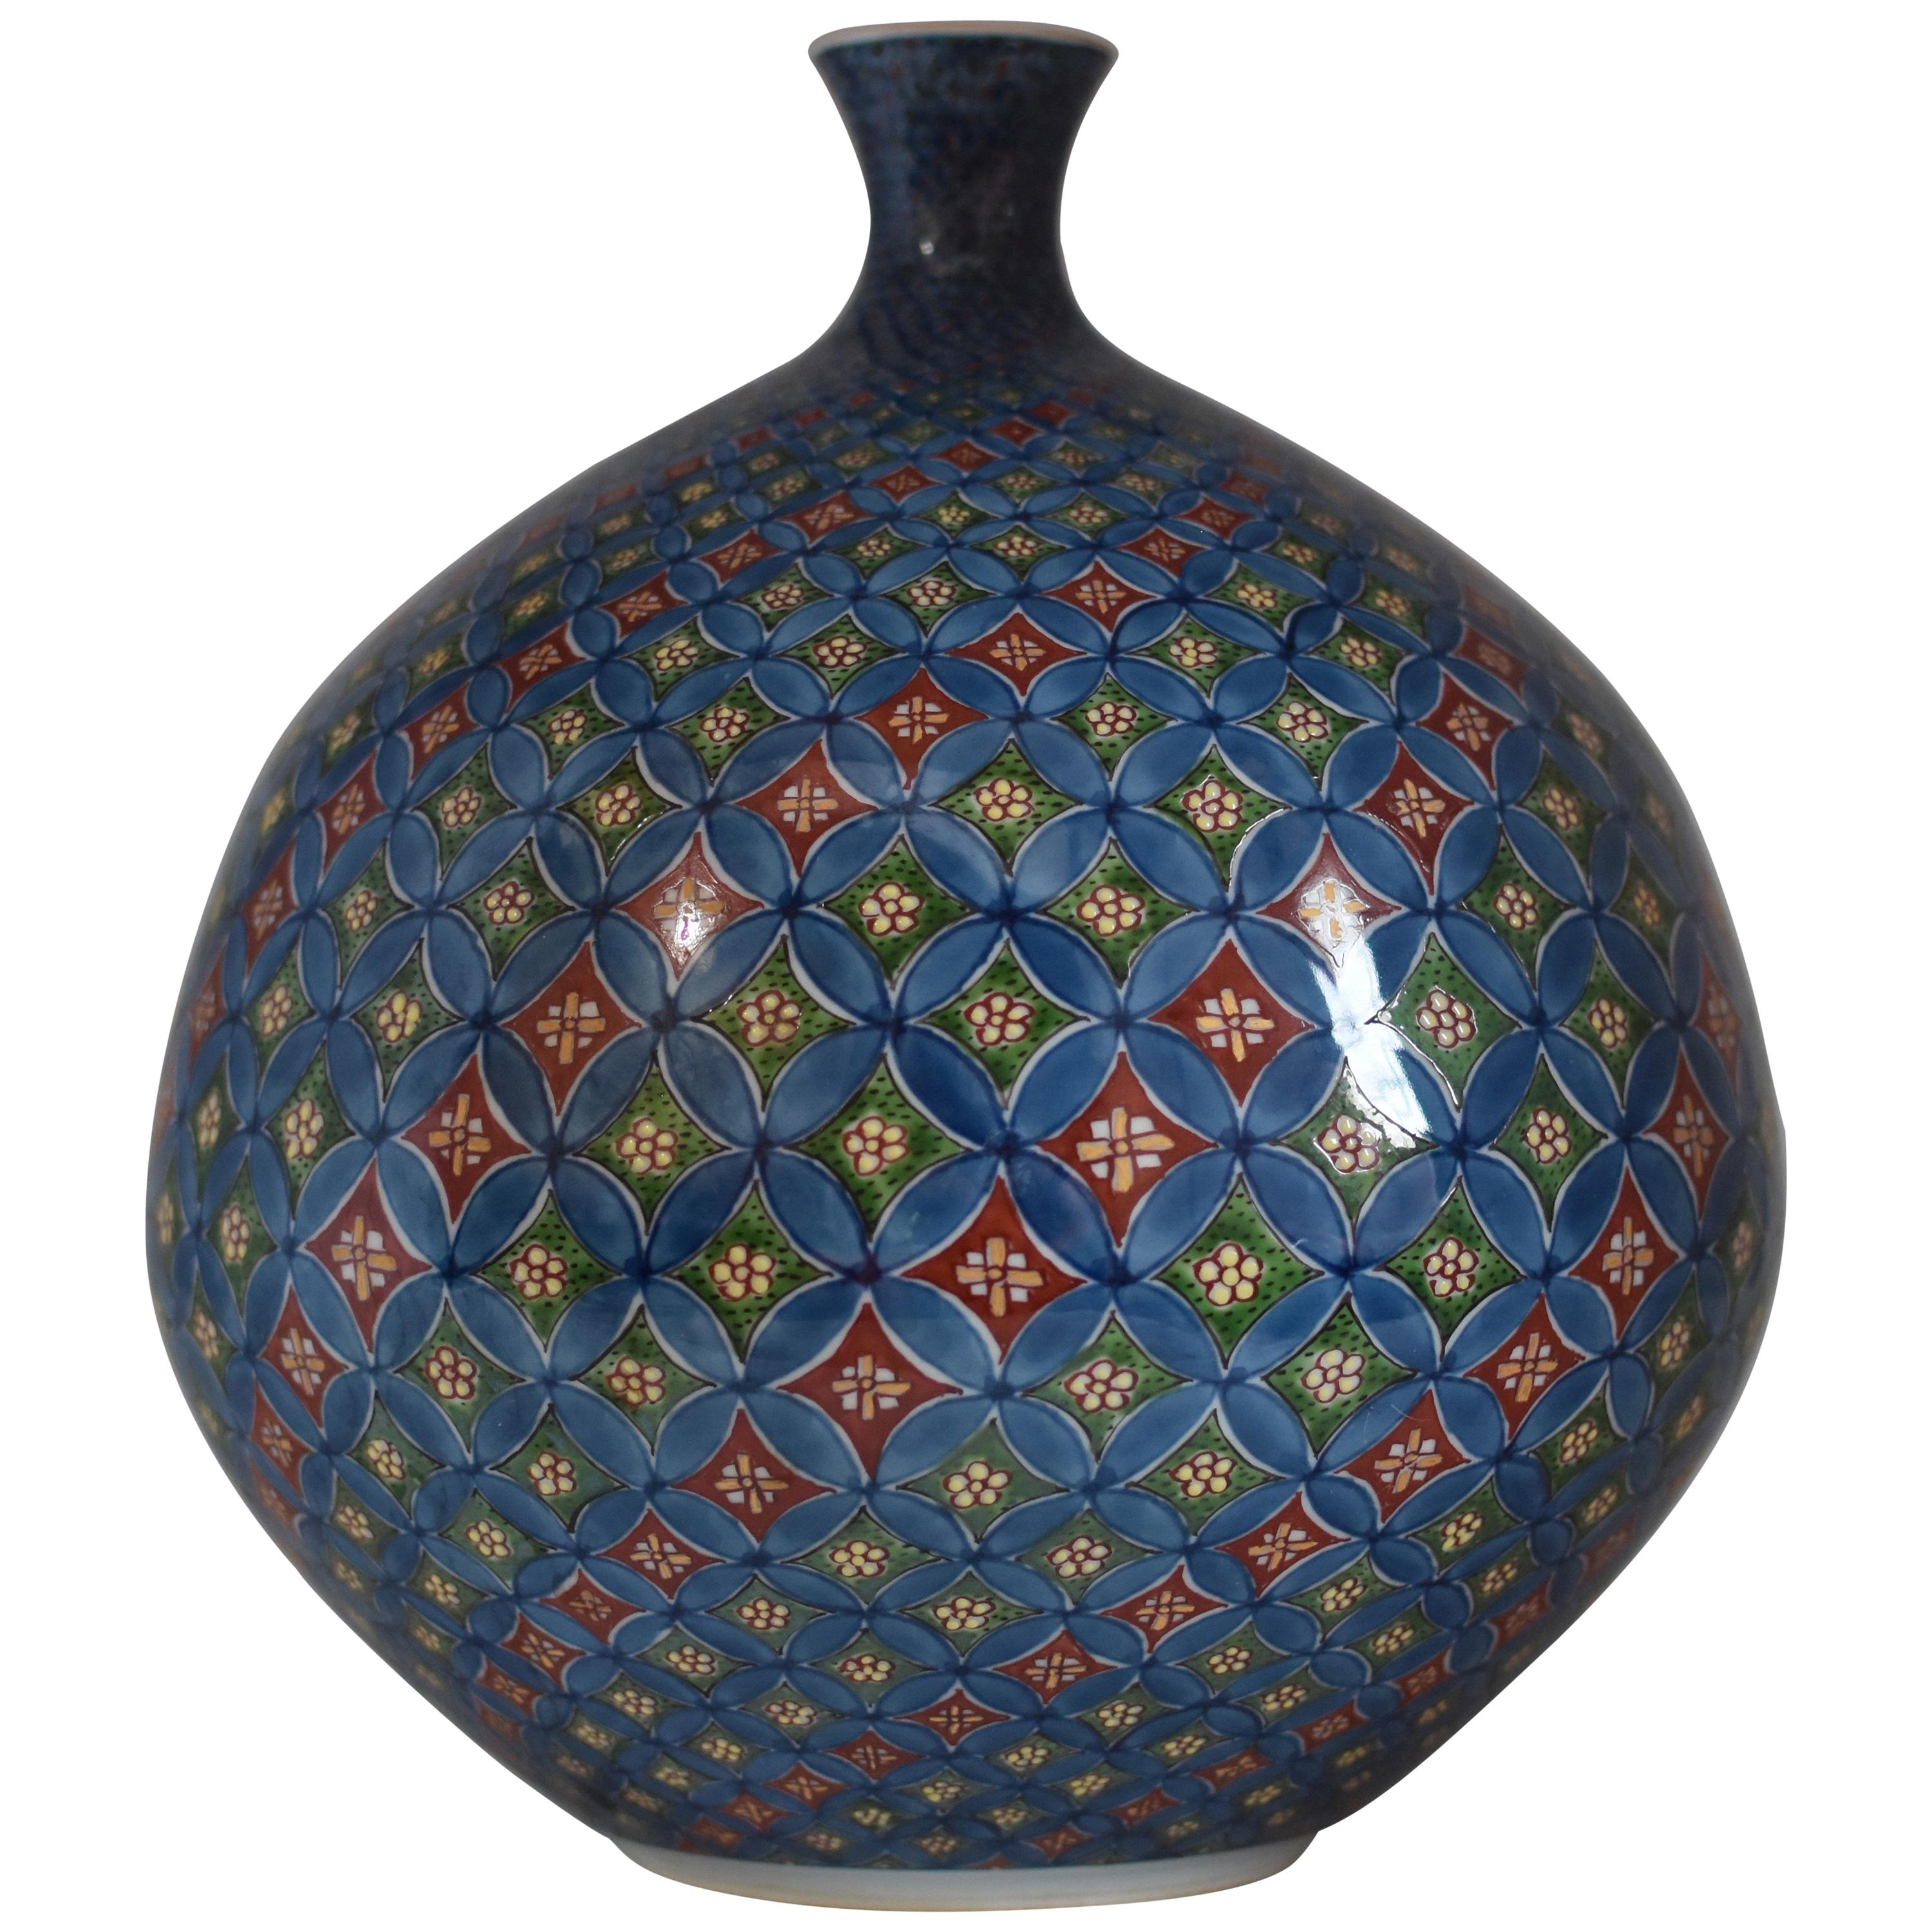 Vase japonais contemporain en porcelaine rouge, bleu et vert par un maître artiste, 4 pièces